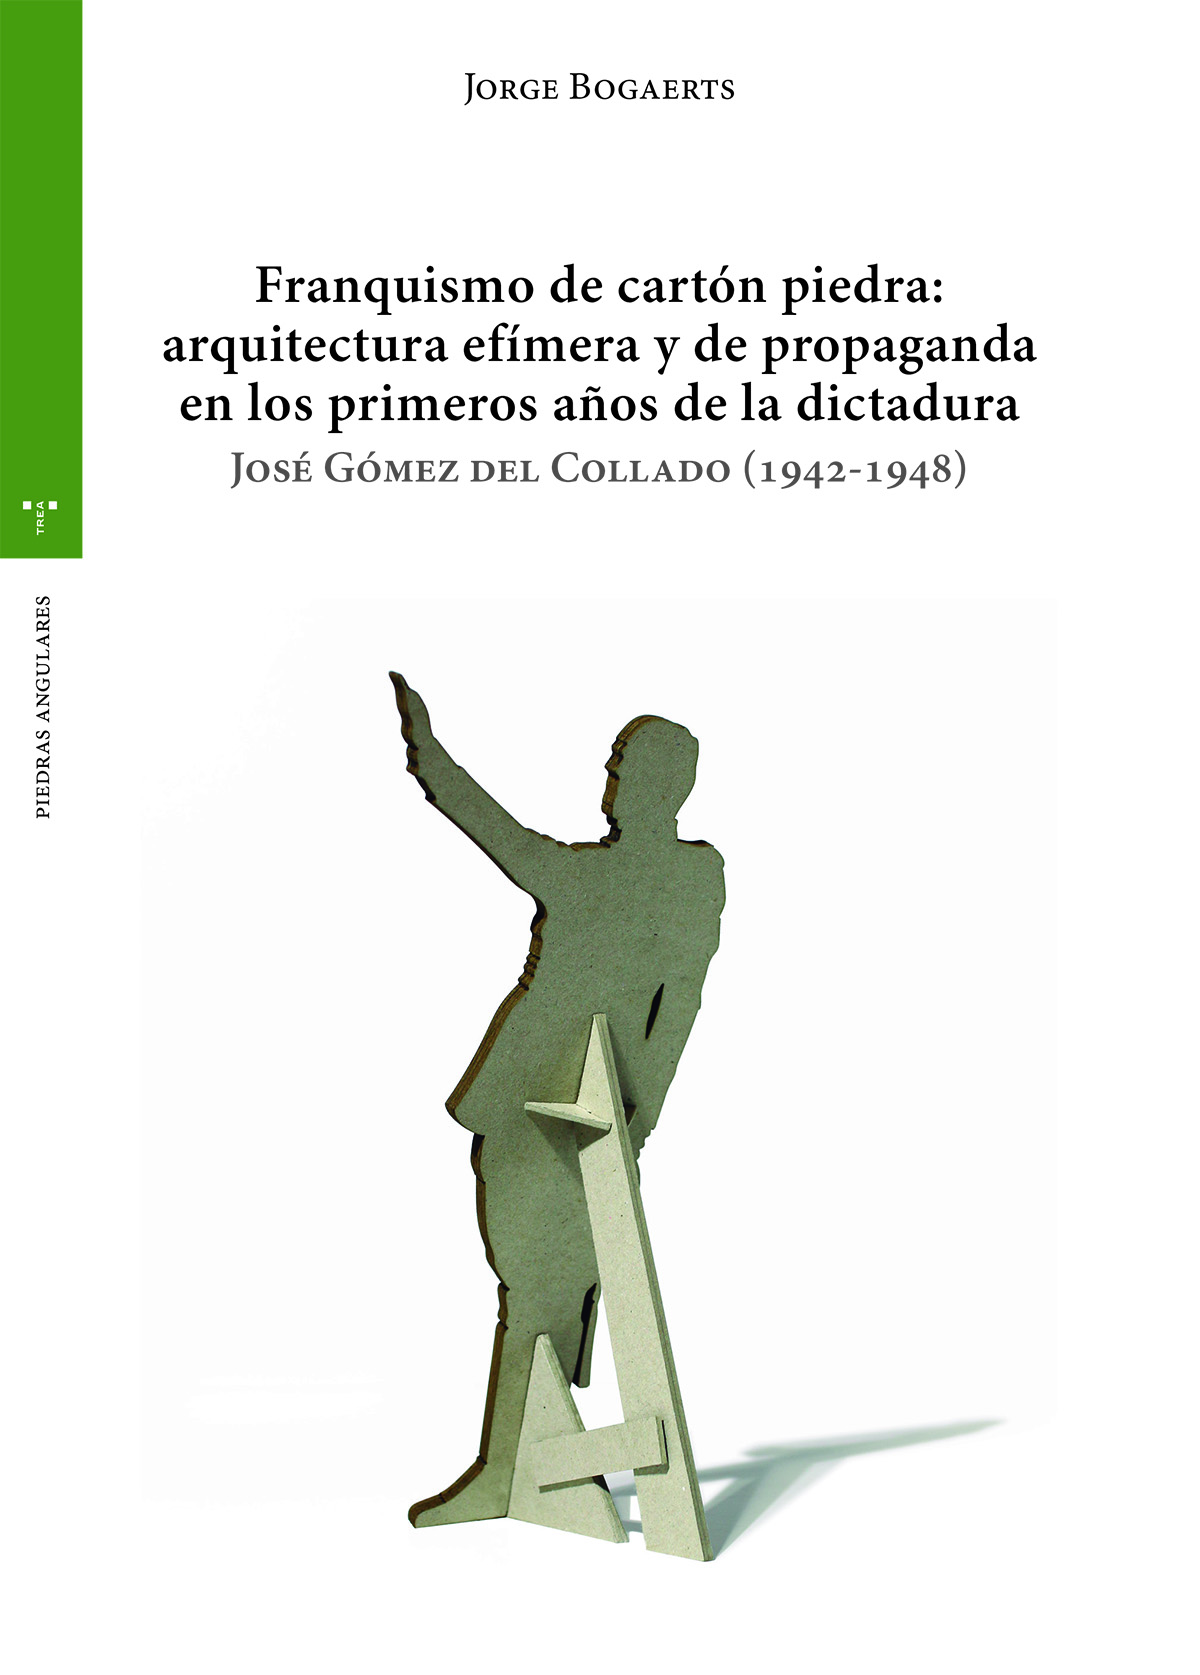 Franquismo de cartón piedra: arquitectura efímera y de propaganda en los primeros años  de la dictadura   «José Gómez del Collado (1942-1948)»